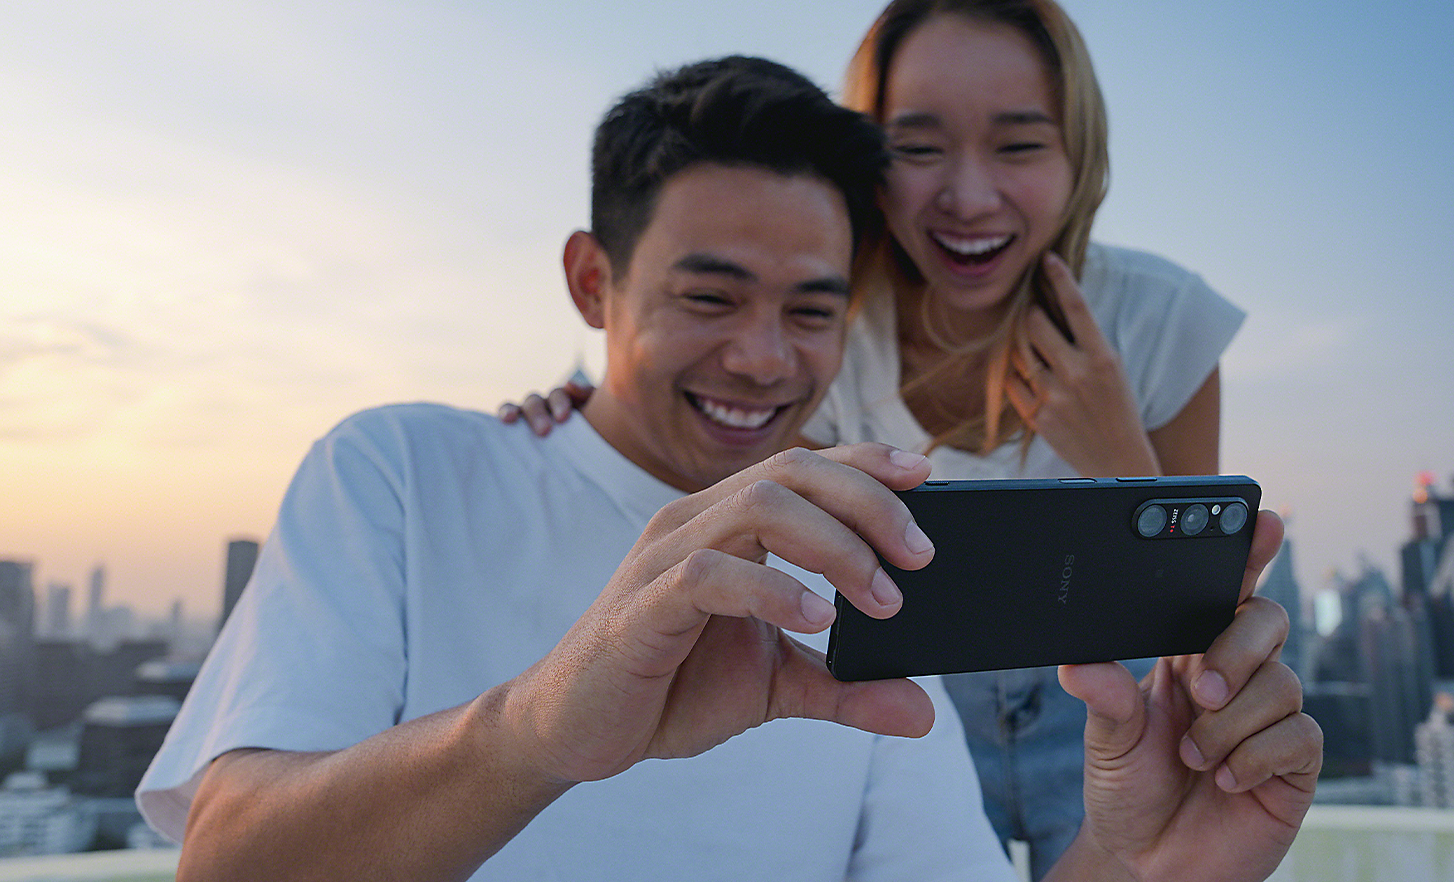 Dvaja mladí ľudia, ktorí si vonku užívajú sledovanie obsahu cez smartfón Xperia 1 V